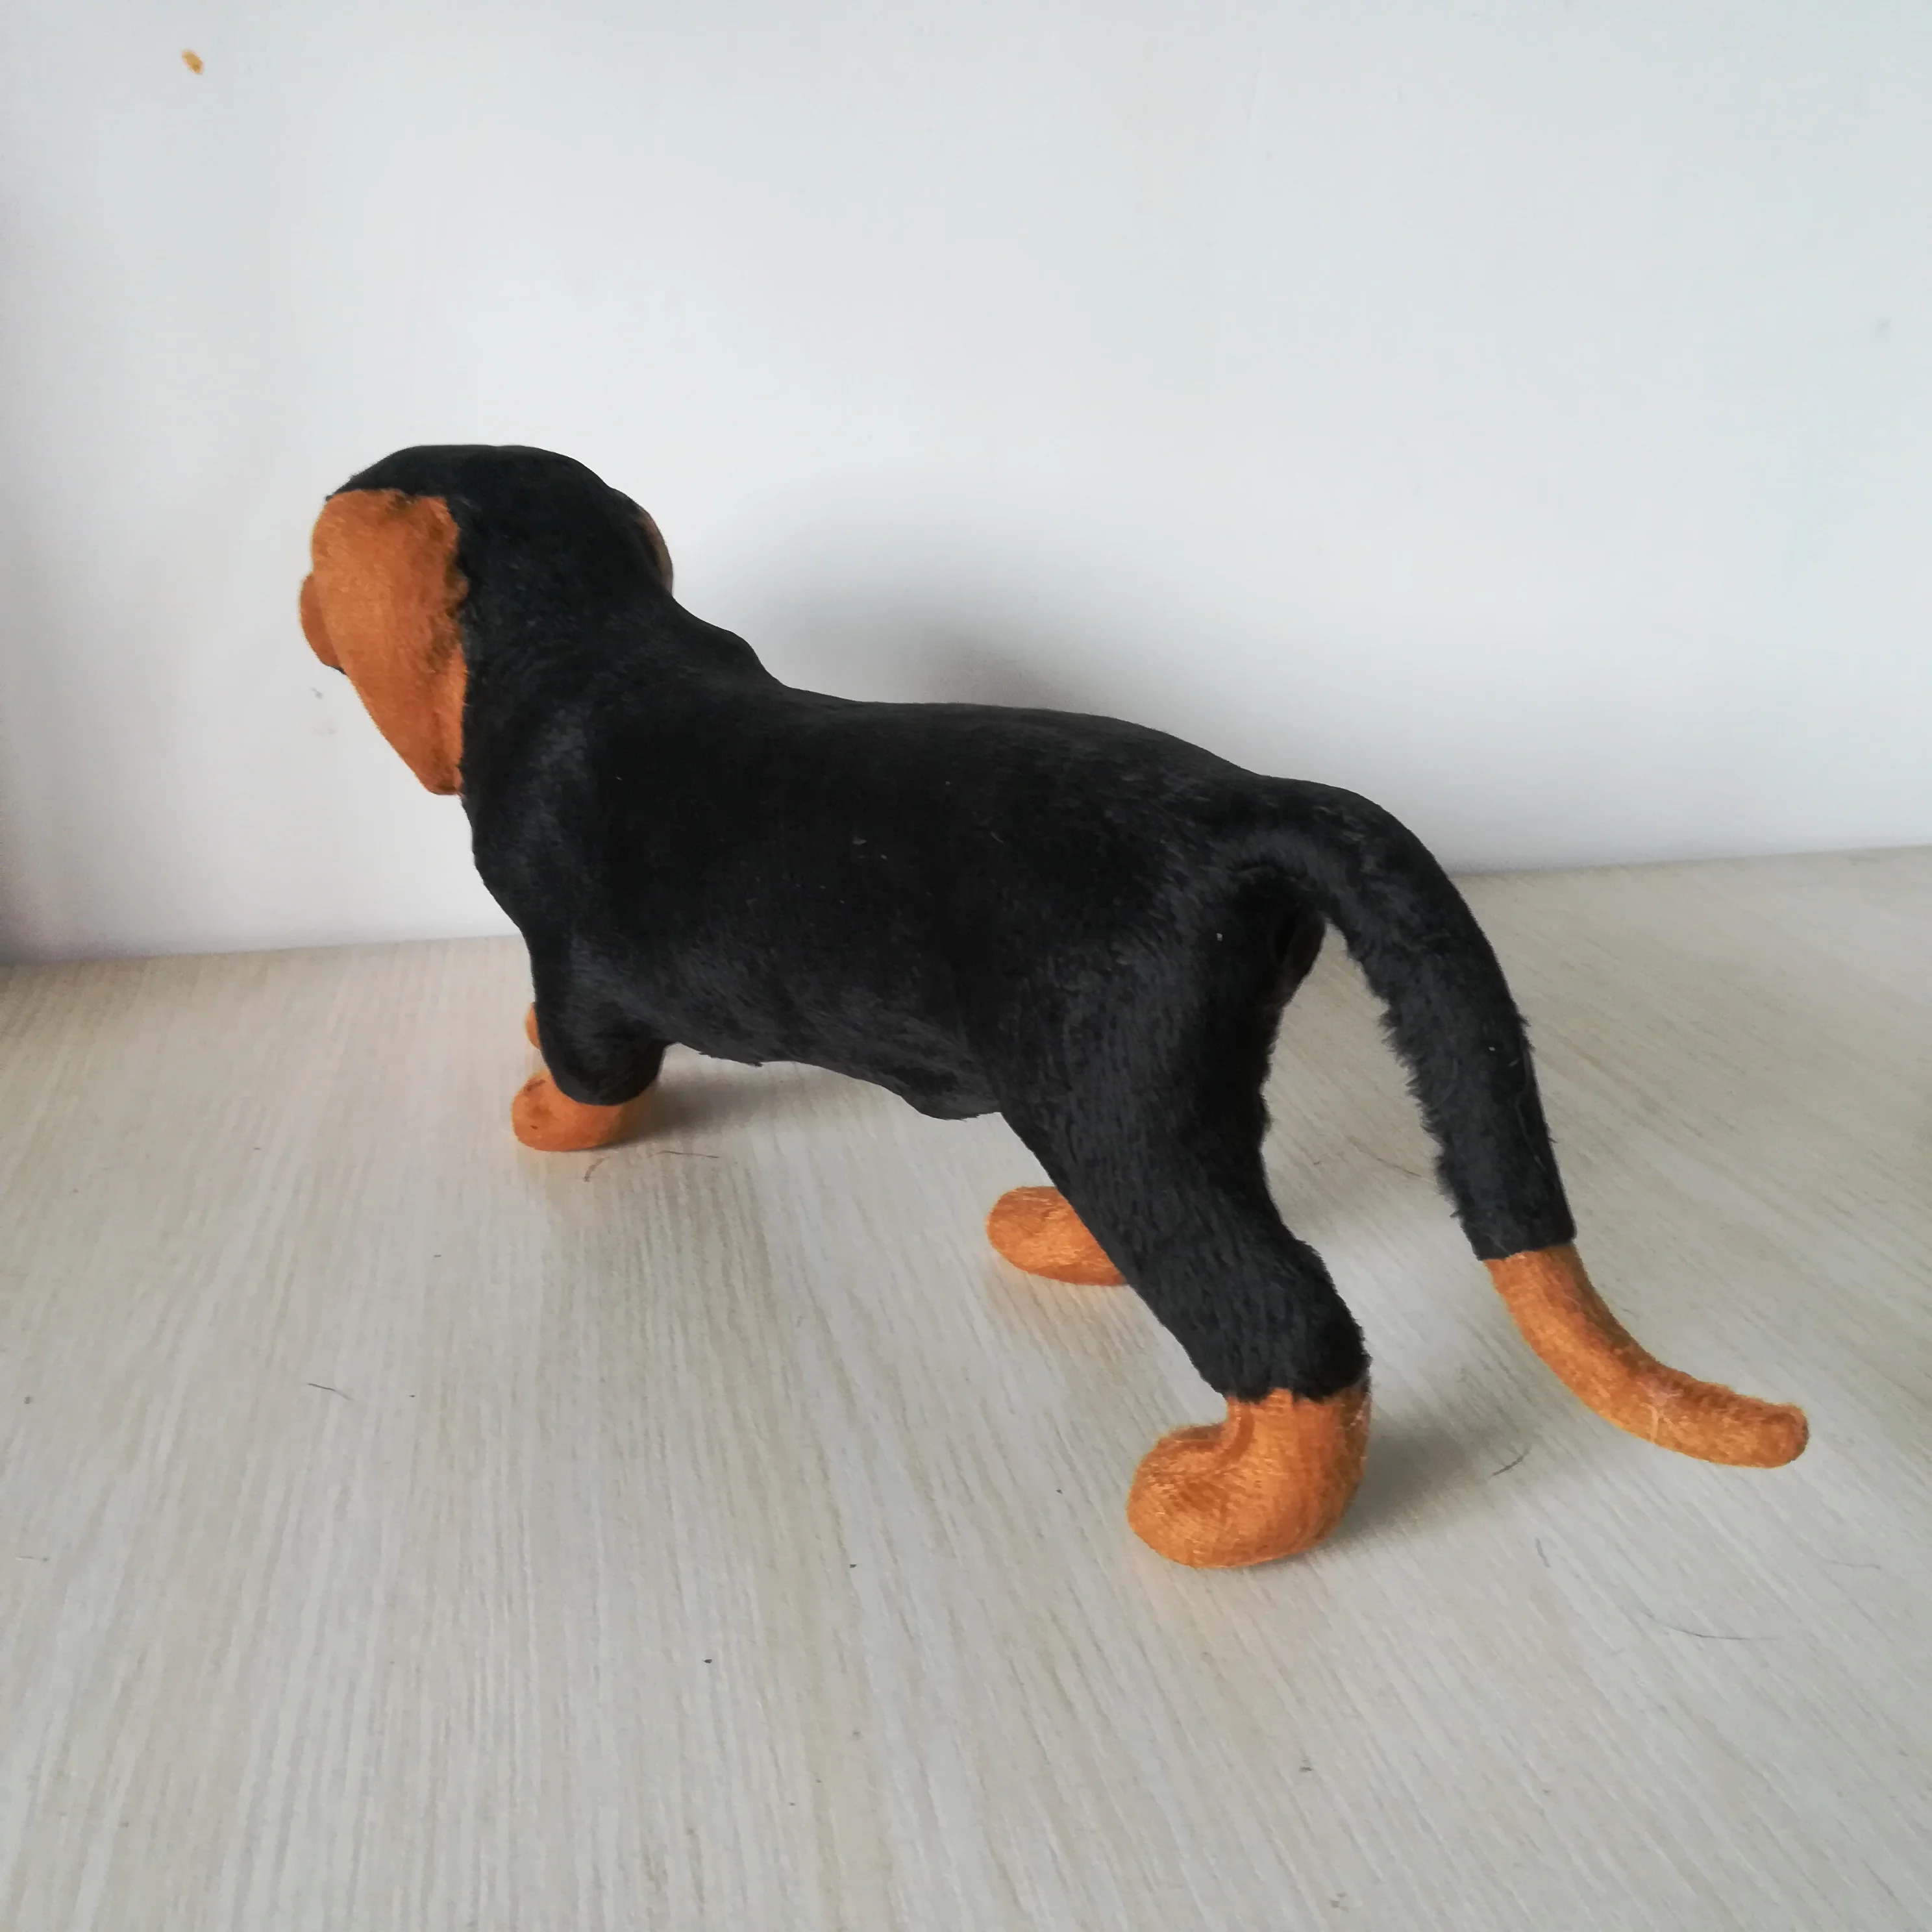 Около 33x13 см реальная игрушка Черная такса собака полиэтилен и меха